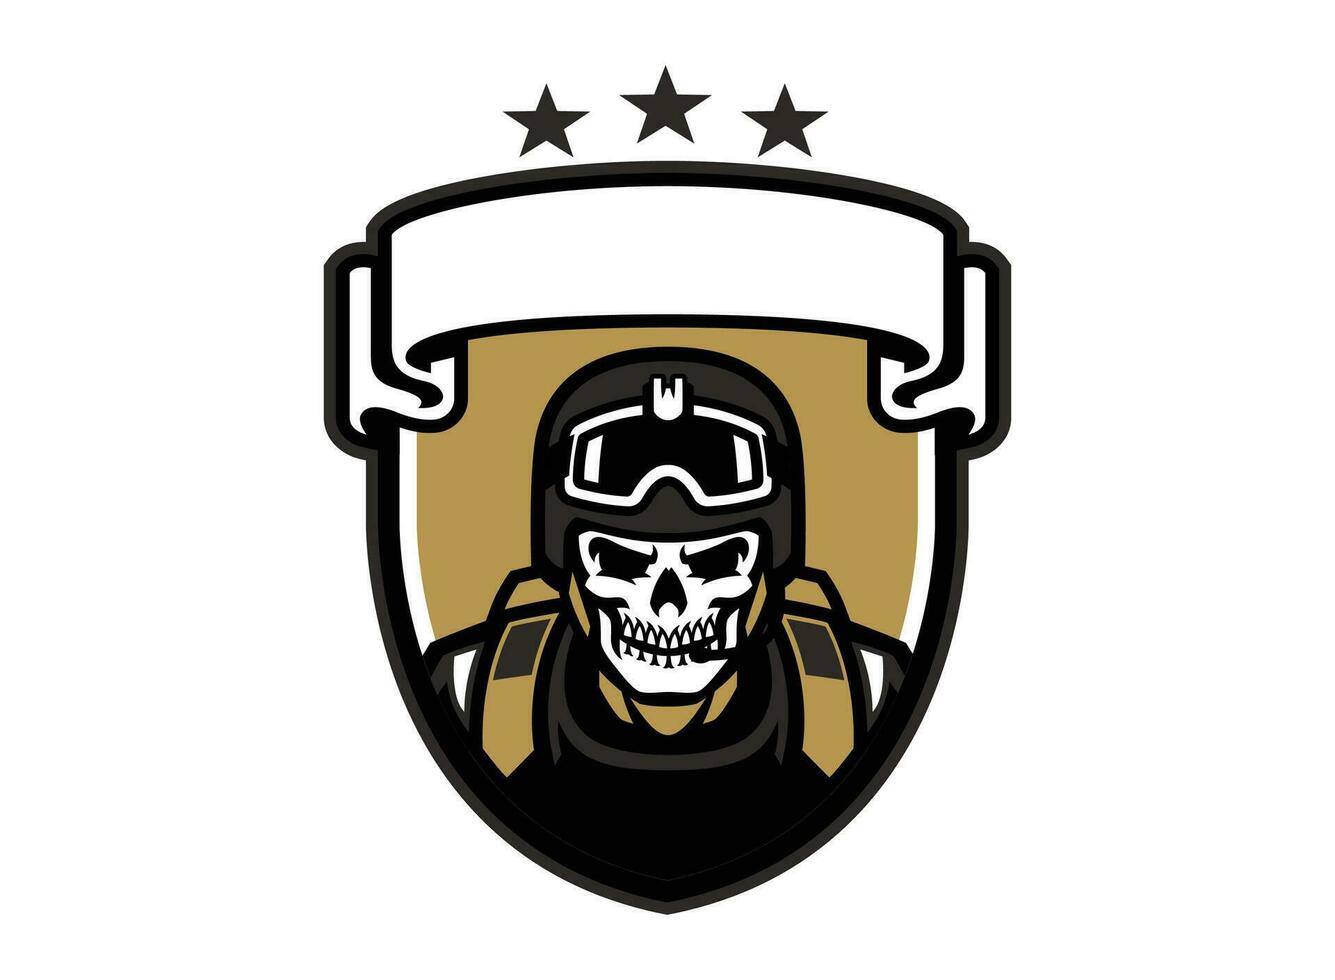 esercito militare logo design per t camicia e berretto vettore